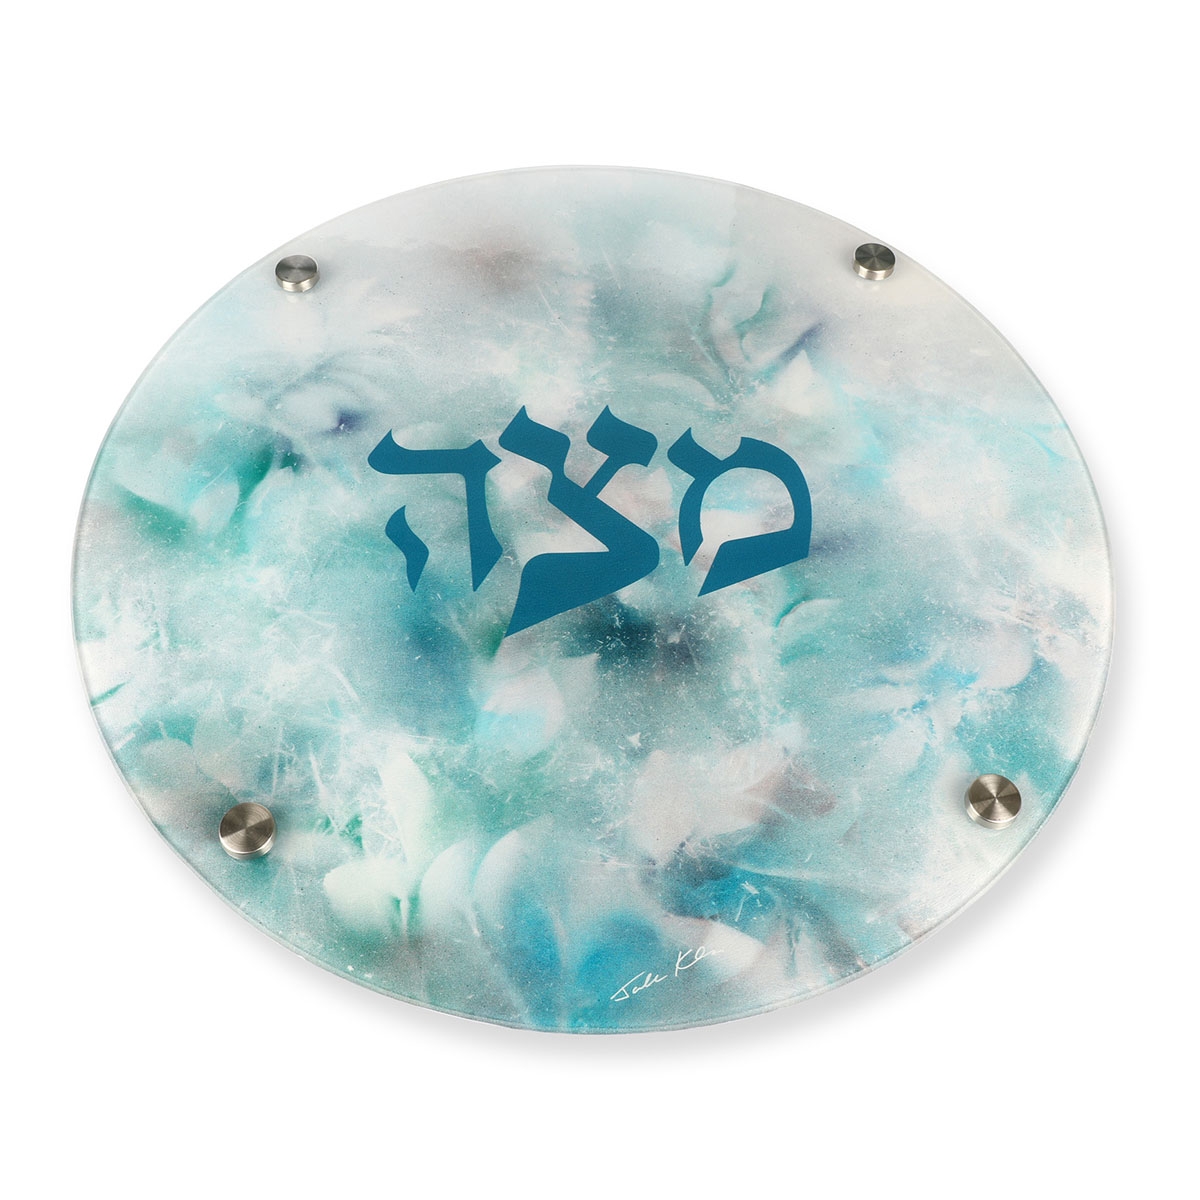 Jordana Klein Blue Marbled Glass Matzah Plate - 1